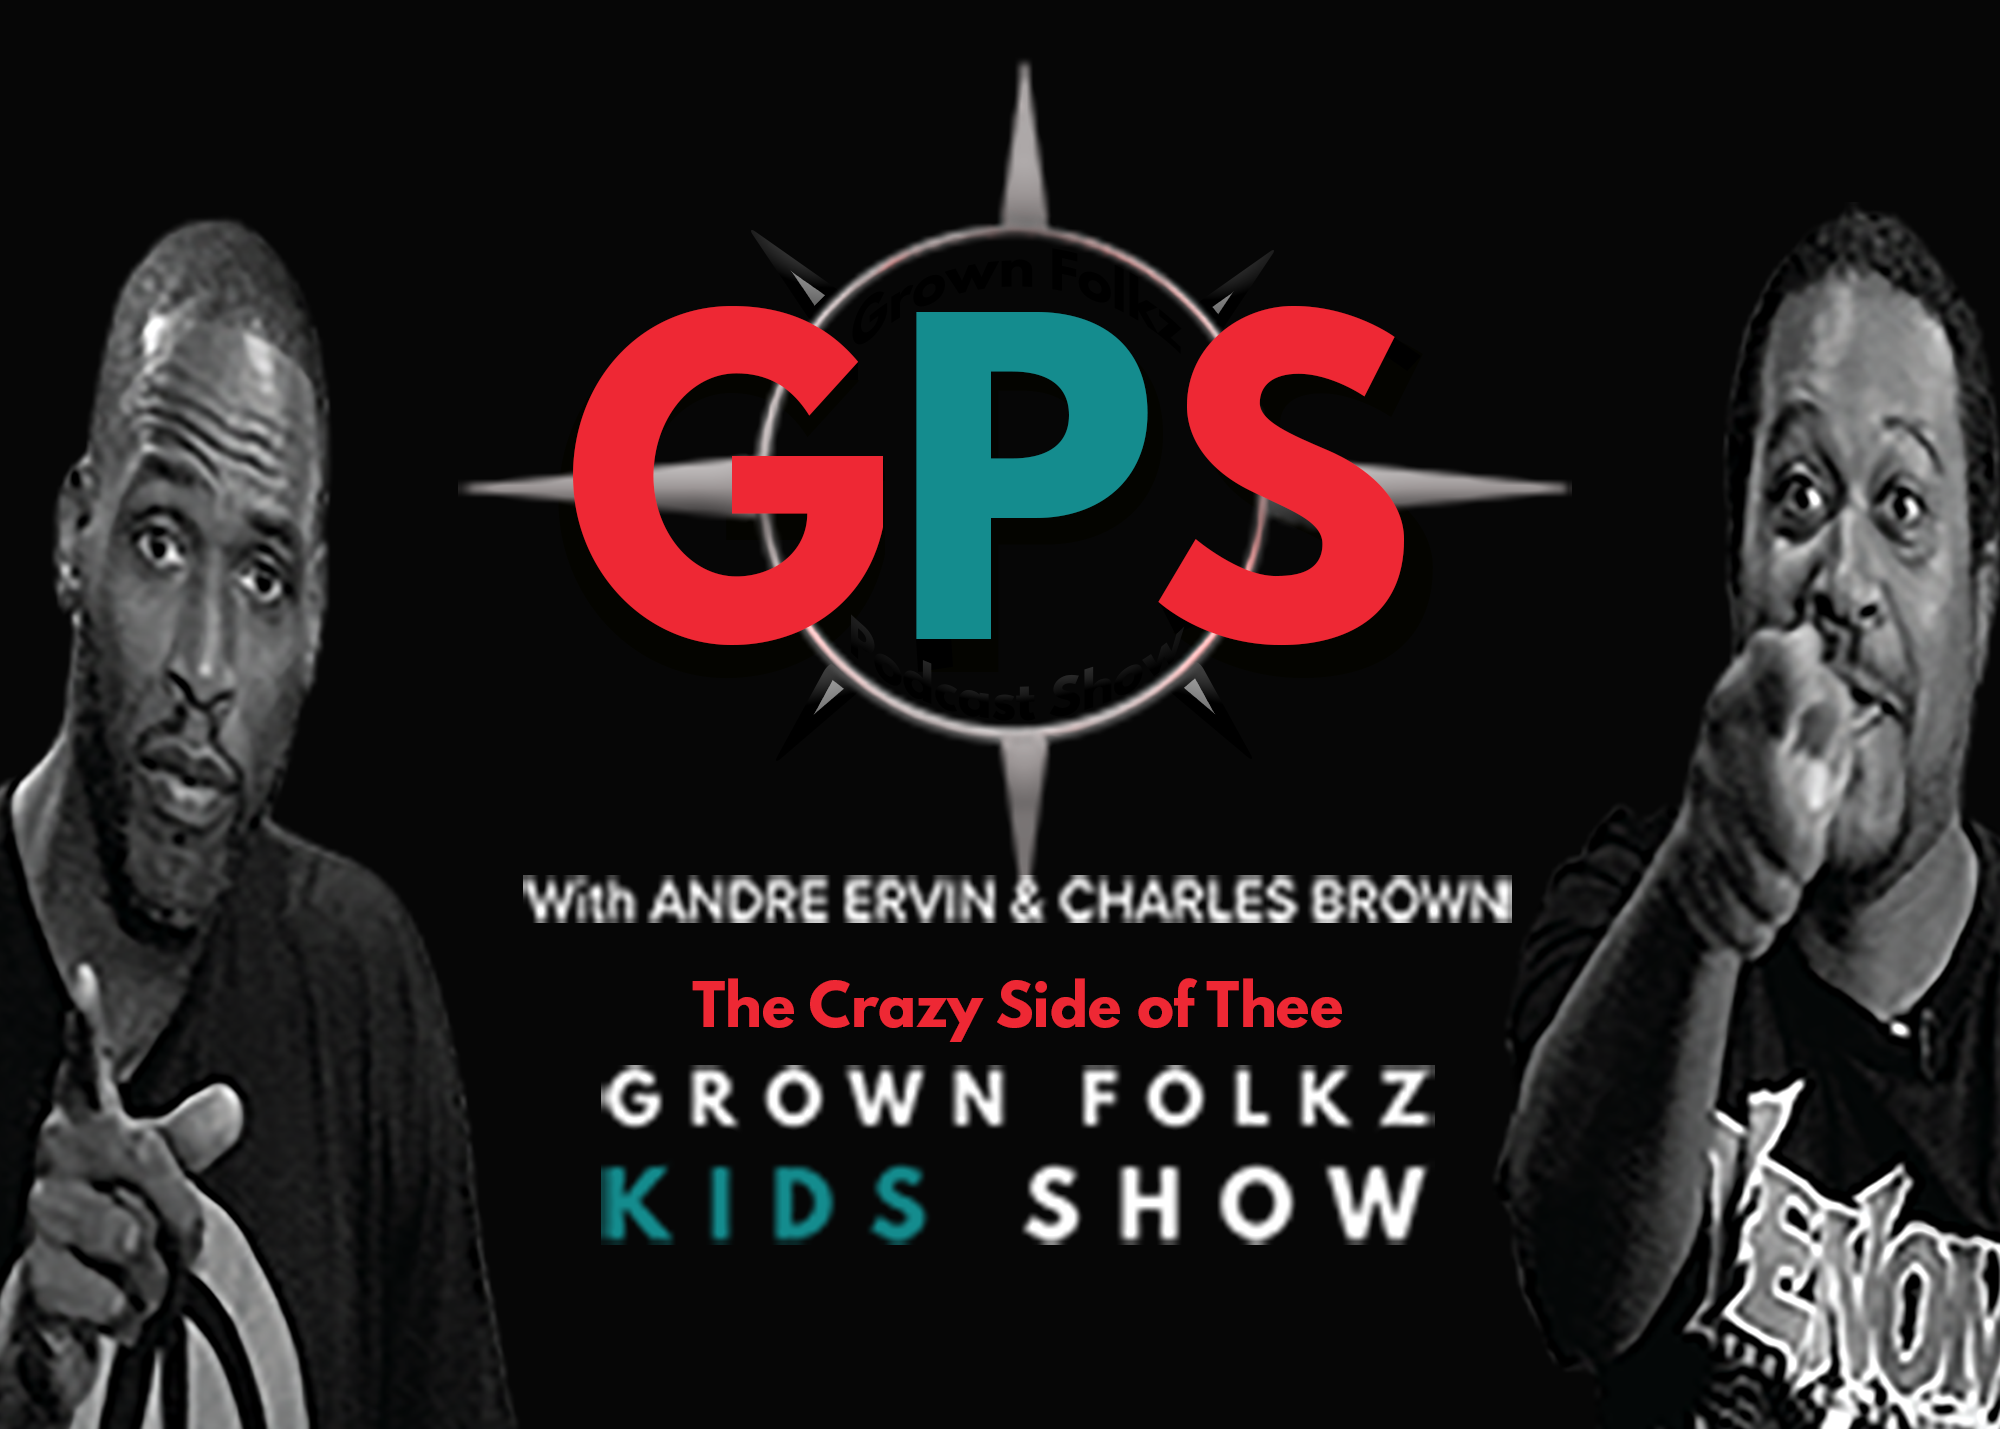 Grown Folkz Kids Show's GPS